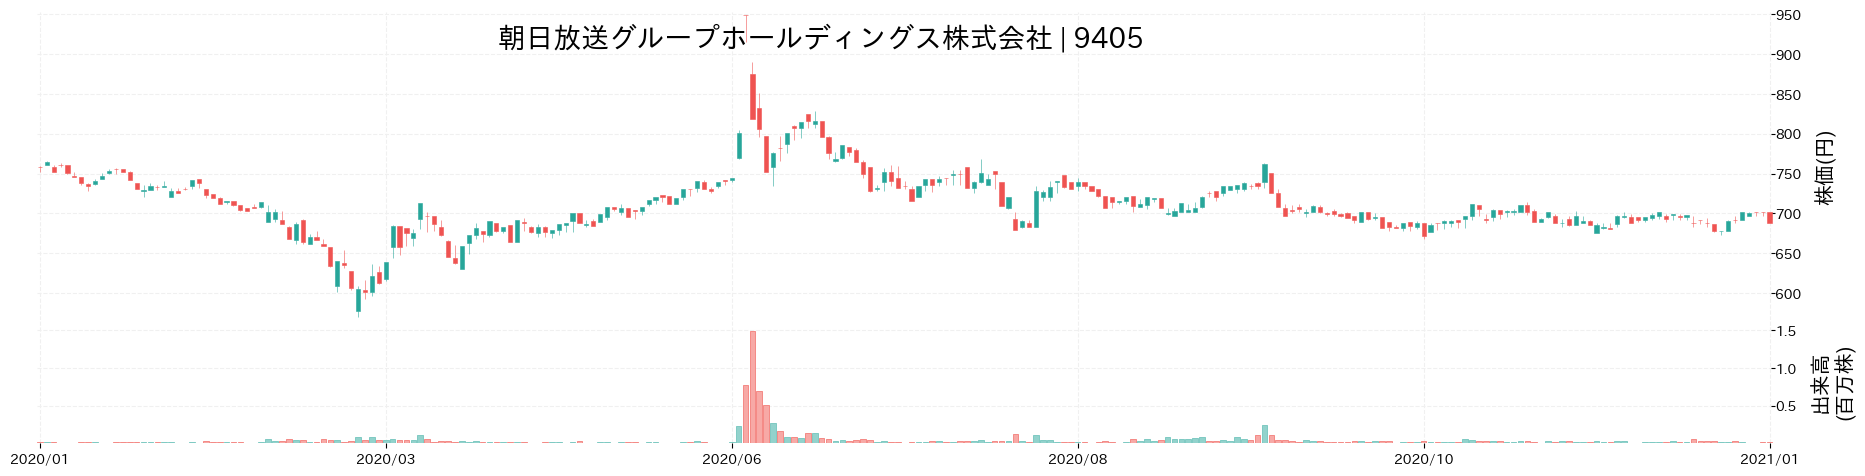 朝日放送グループホールディングスの株価推移(2020)